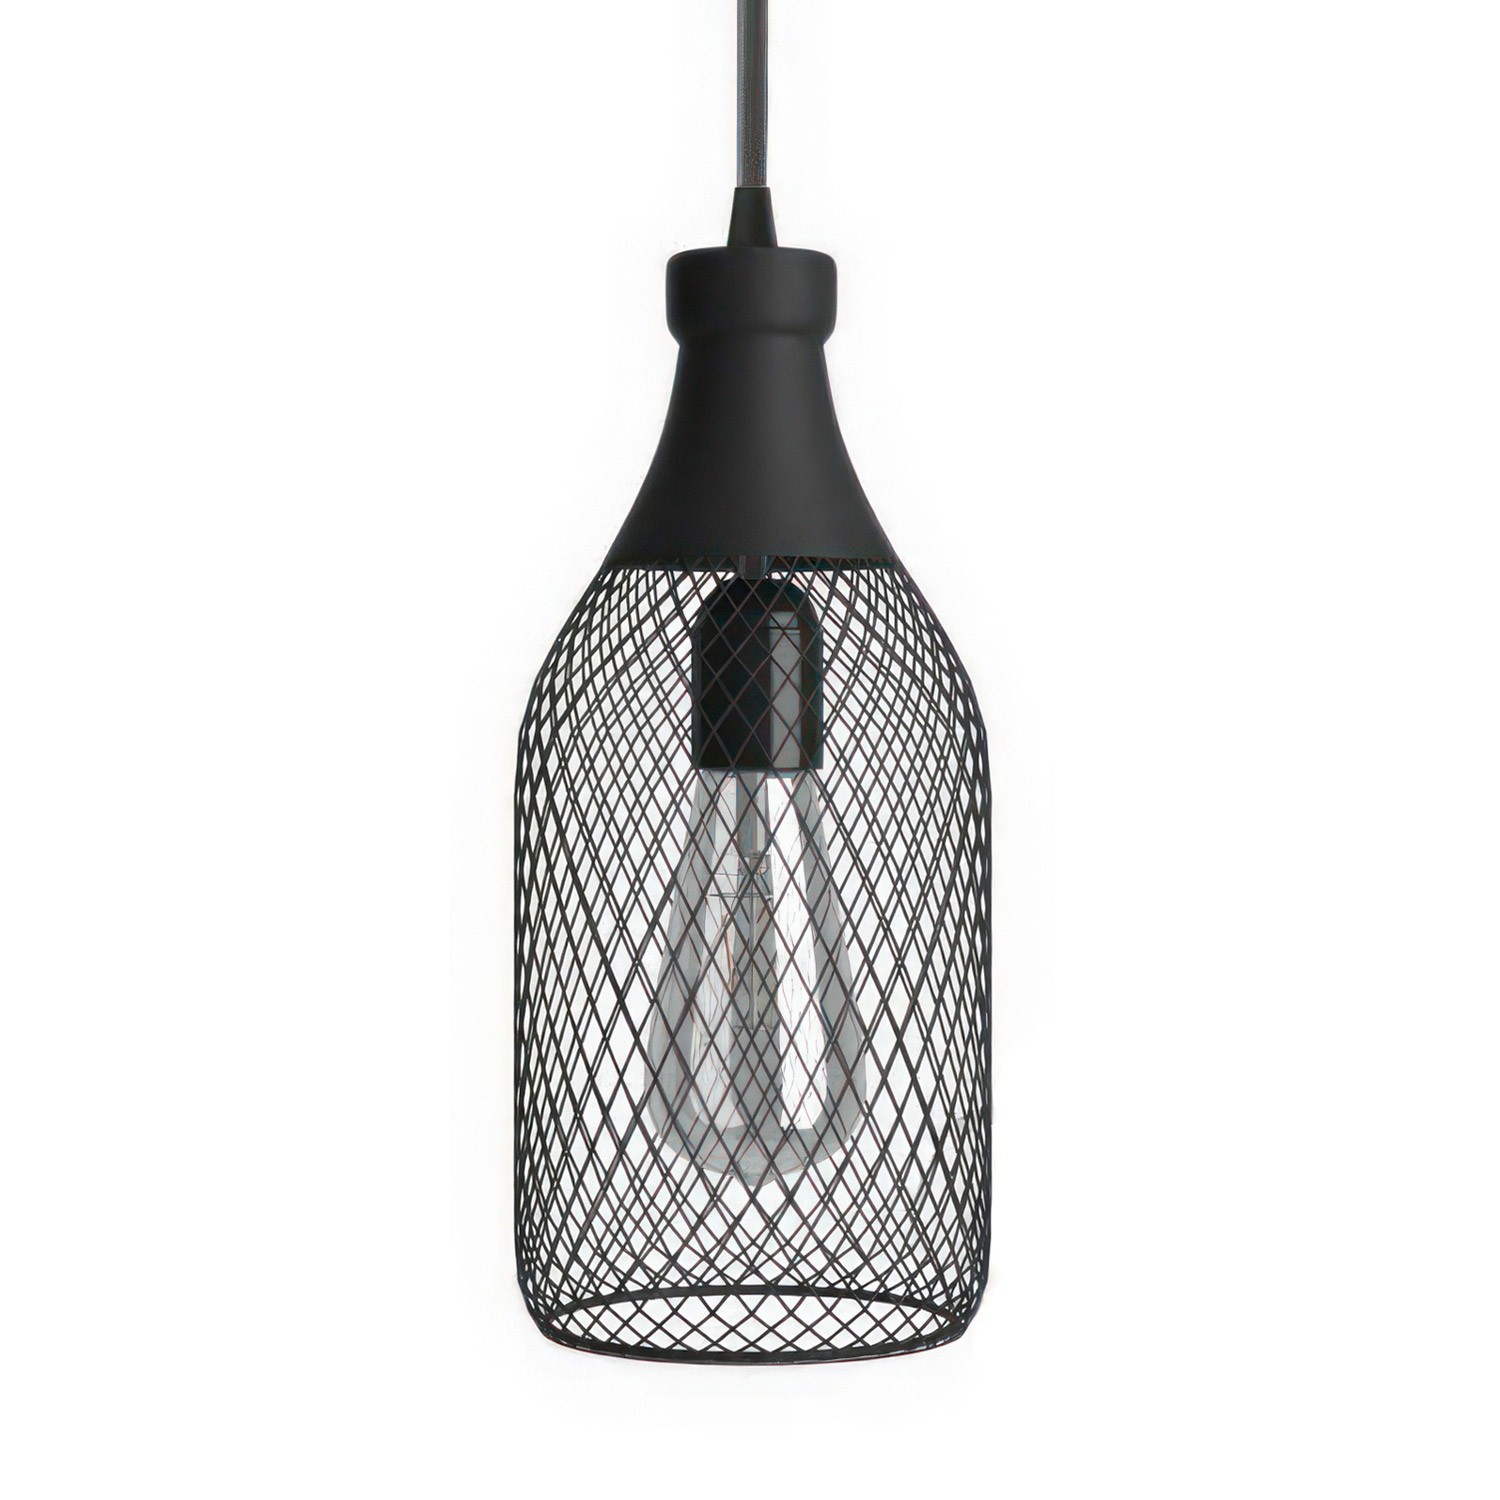 Pendellampa komplett med textilkabel, Jéroboam flaskformad bur lampskärm och detaljer i metall - Tillverkad i Italien